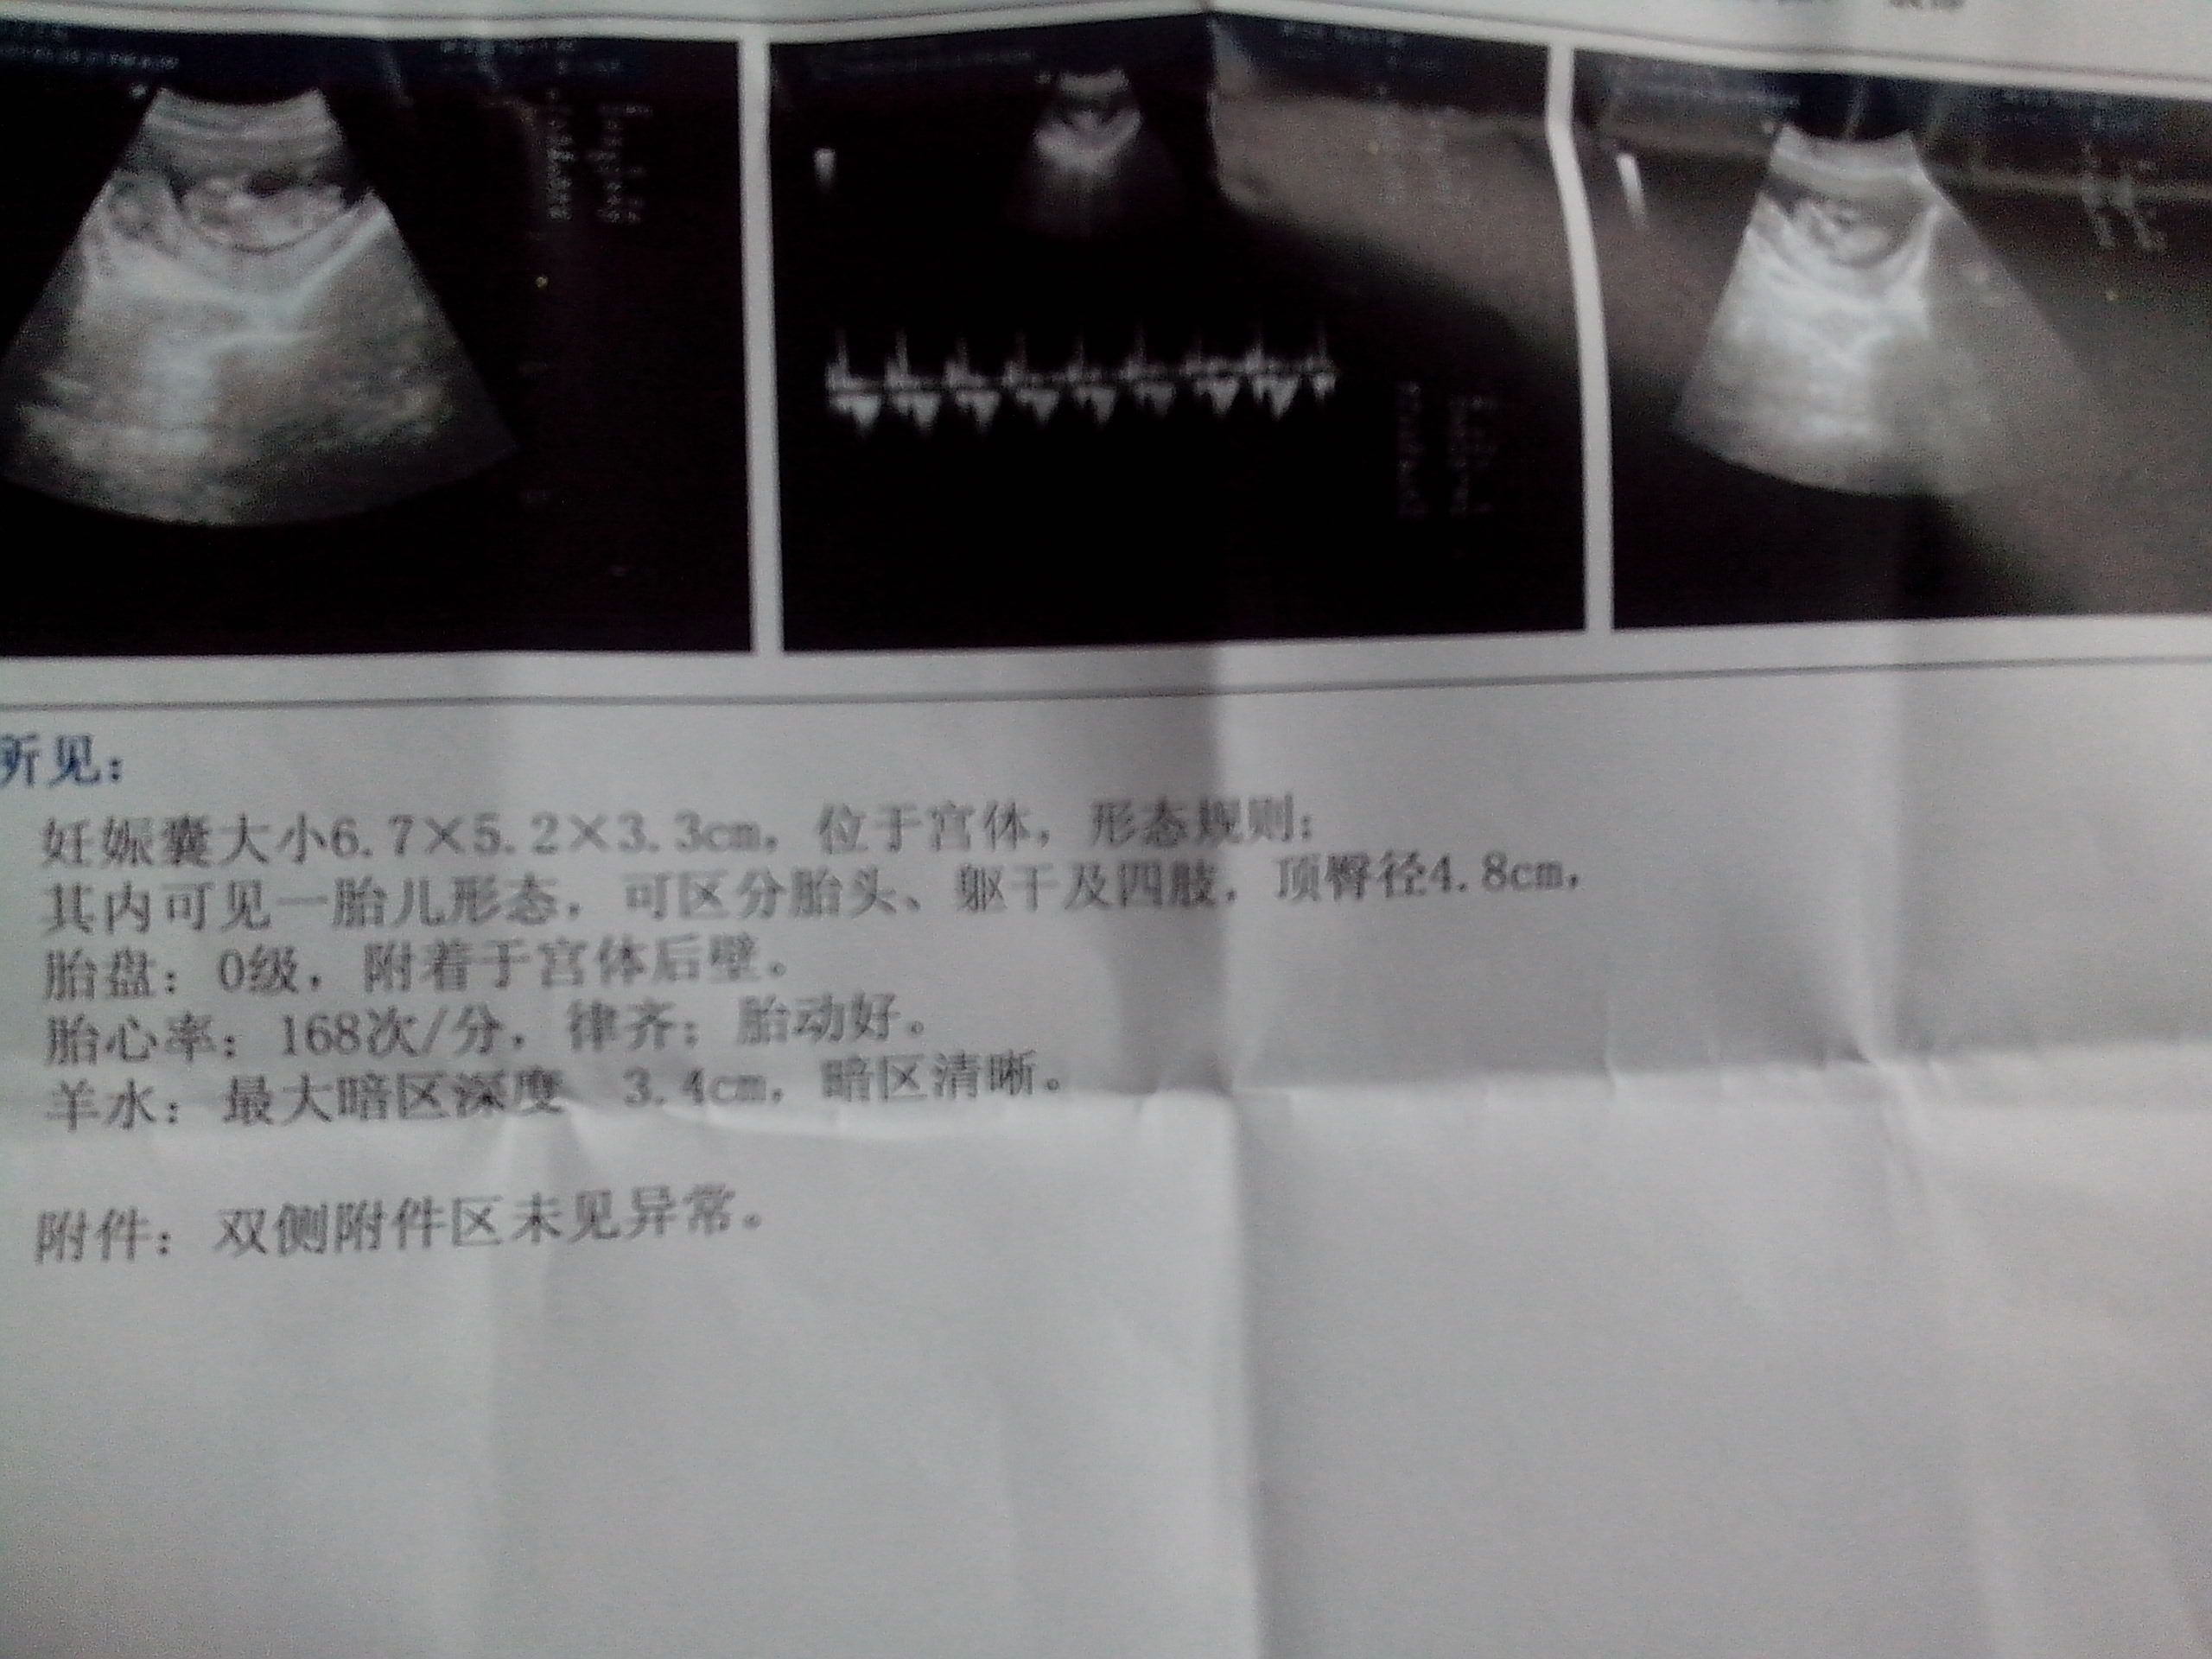 怀孕5周孕囊大小图片-图库-五毛网